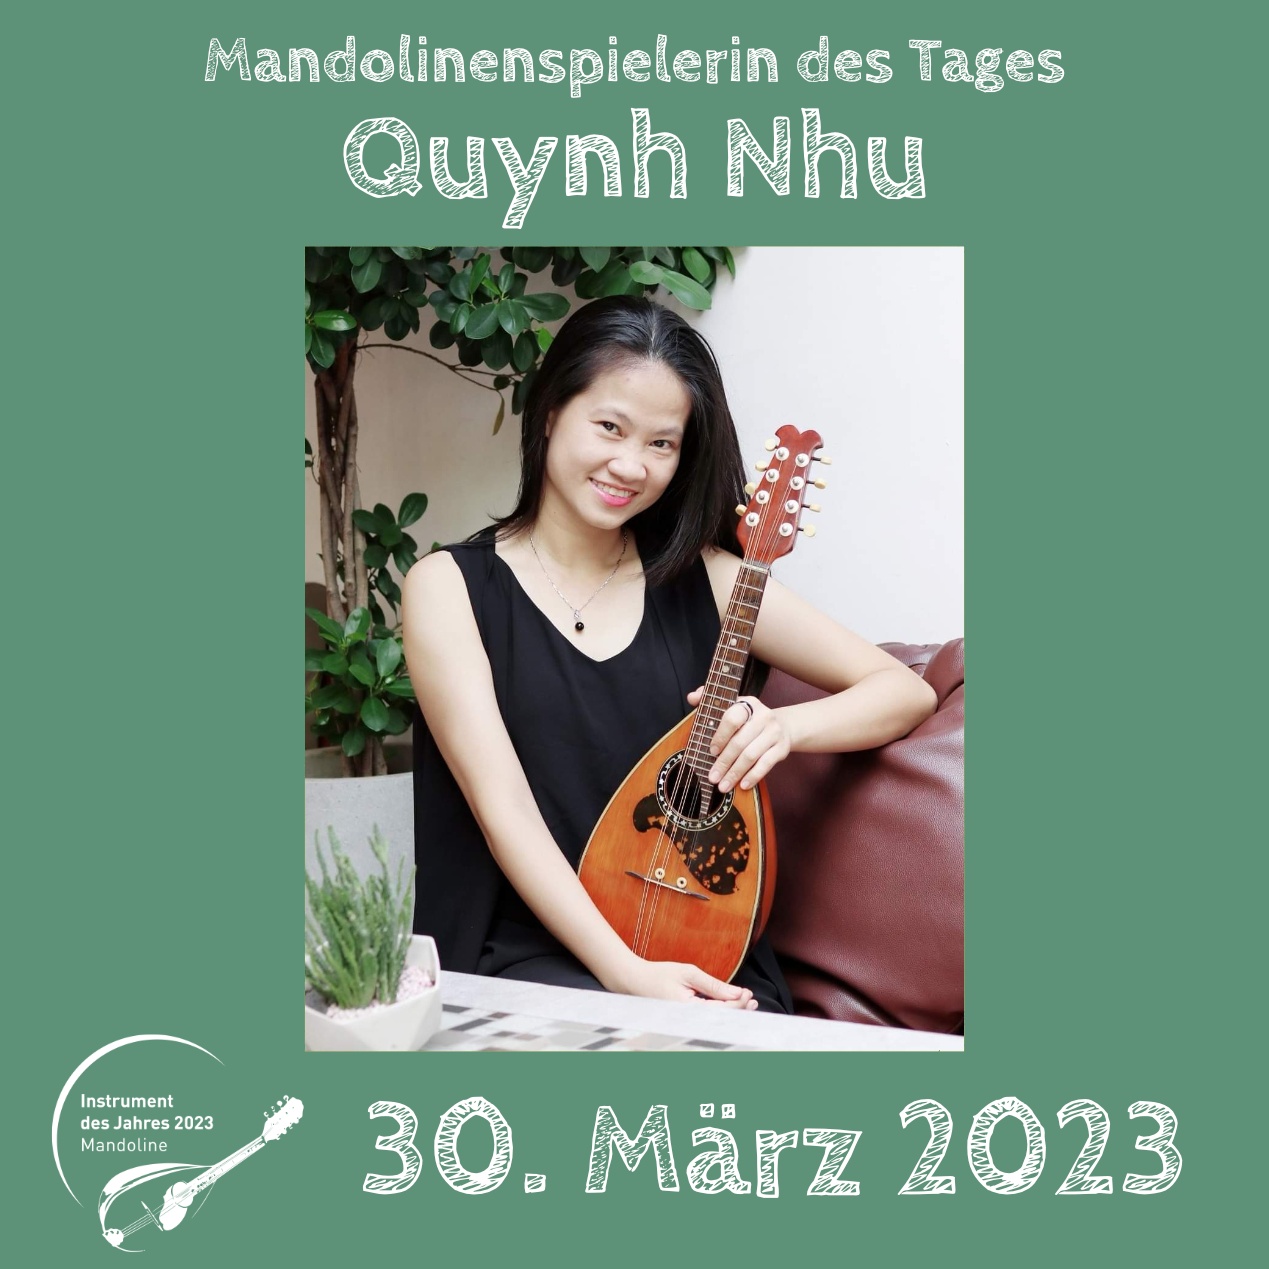 Quynh Nhu Mandoline Instrument des Jahres 2023 Mandolinenspielerin des Tages